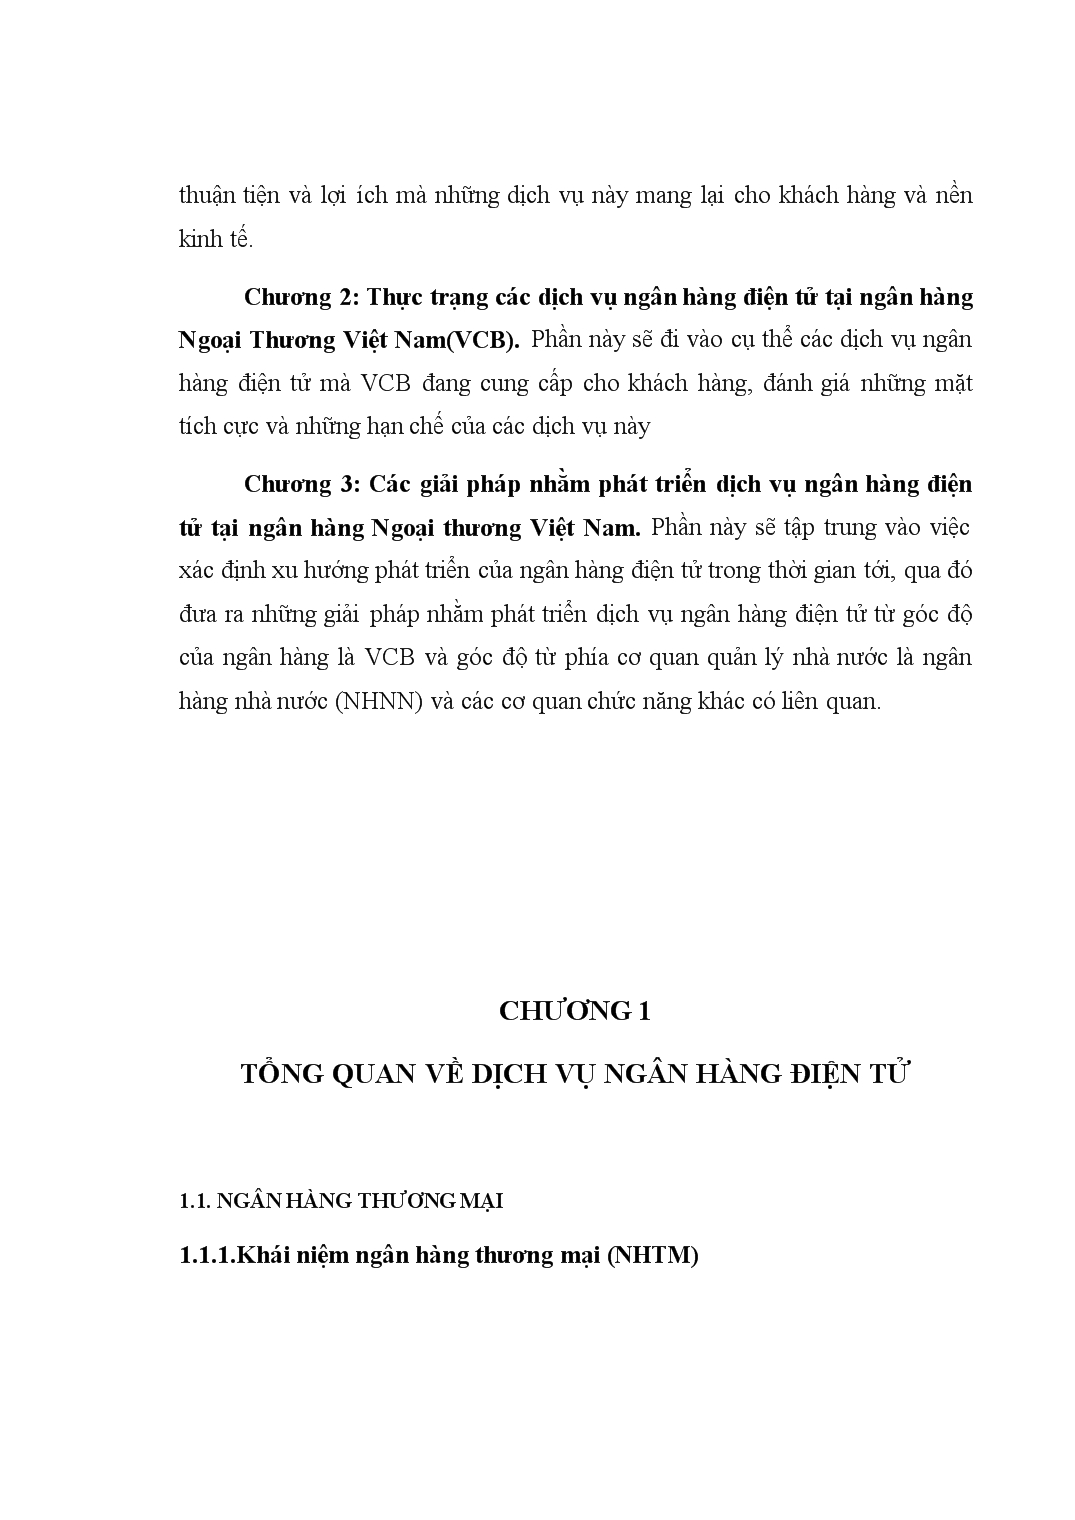 Chuyên đề Phát triển dịch vụ ngân hàng điện tử tại ngân hàng Ngoại Thương Việt Nam trang 2